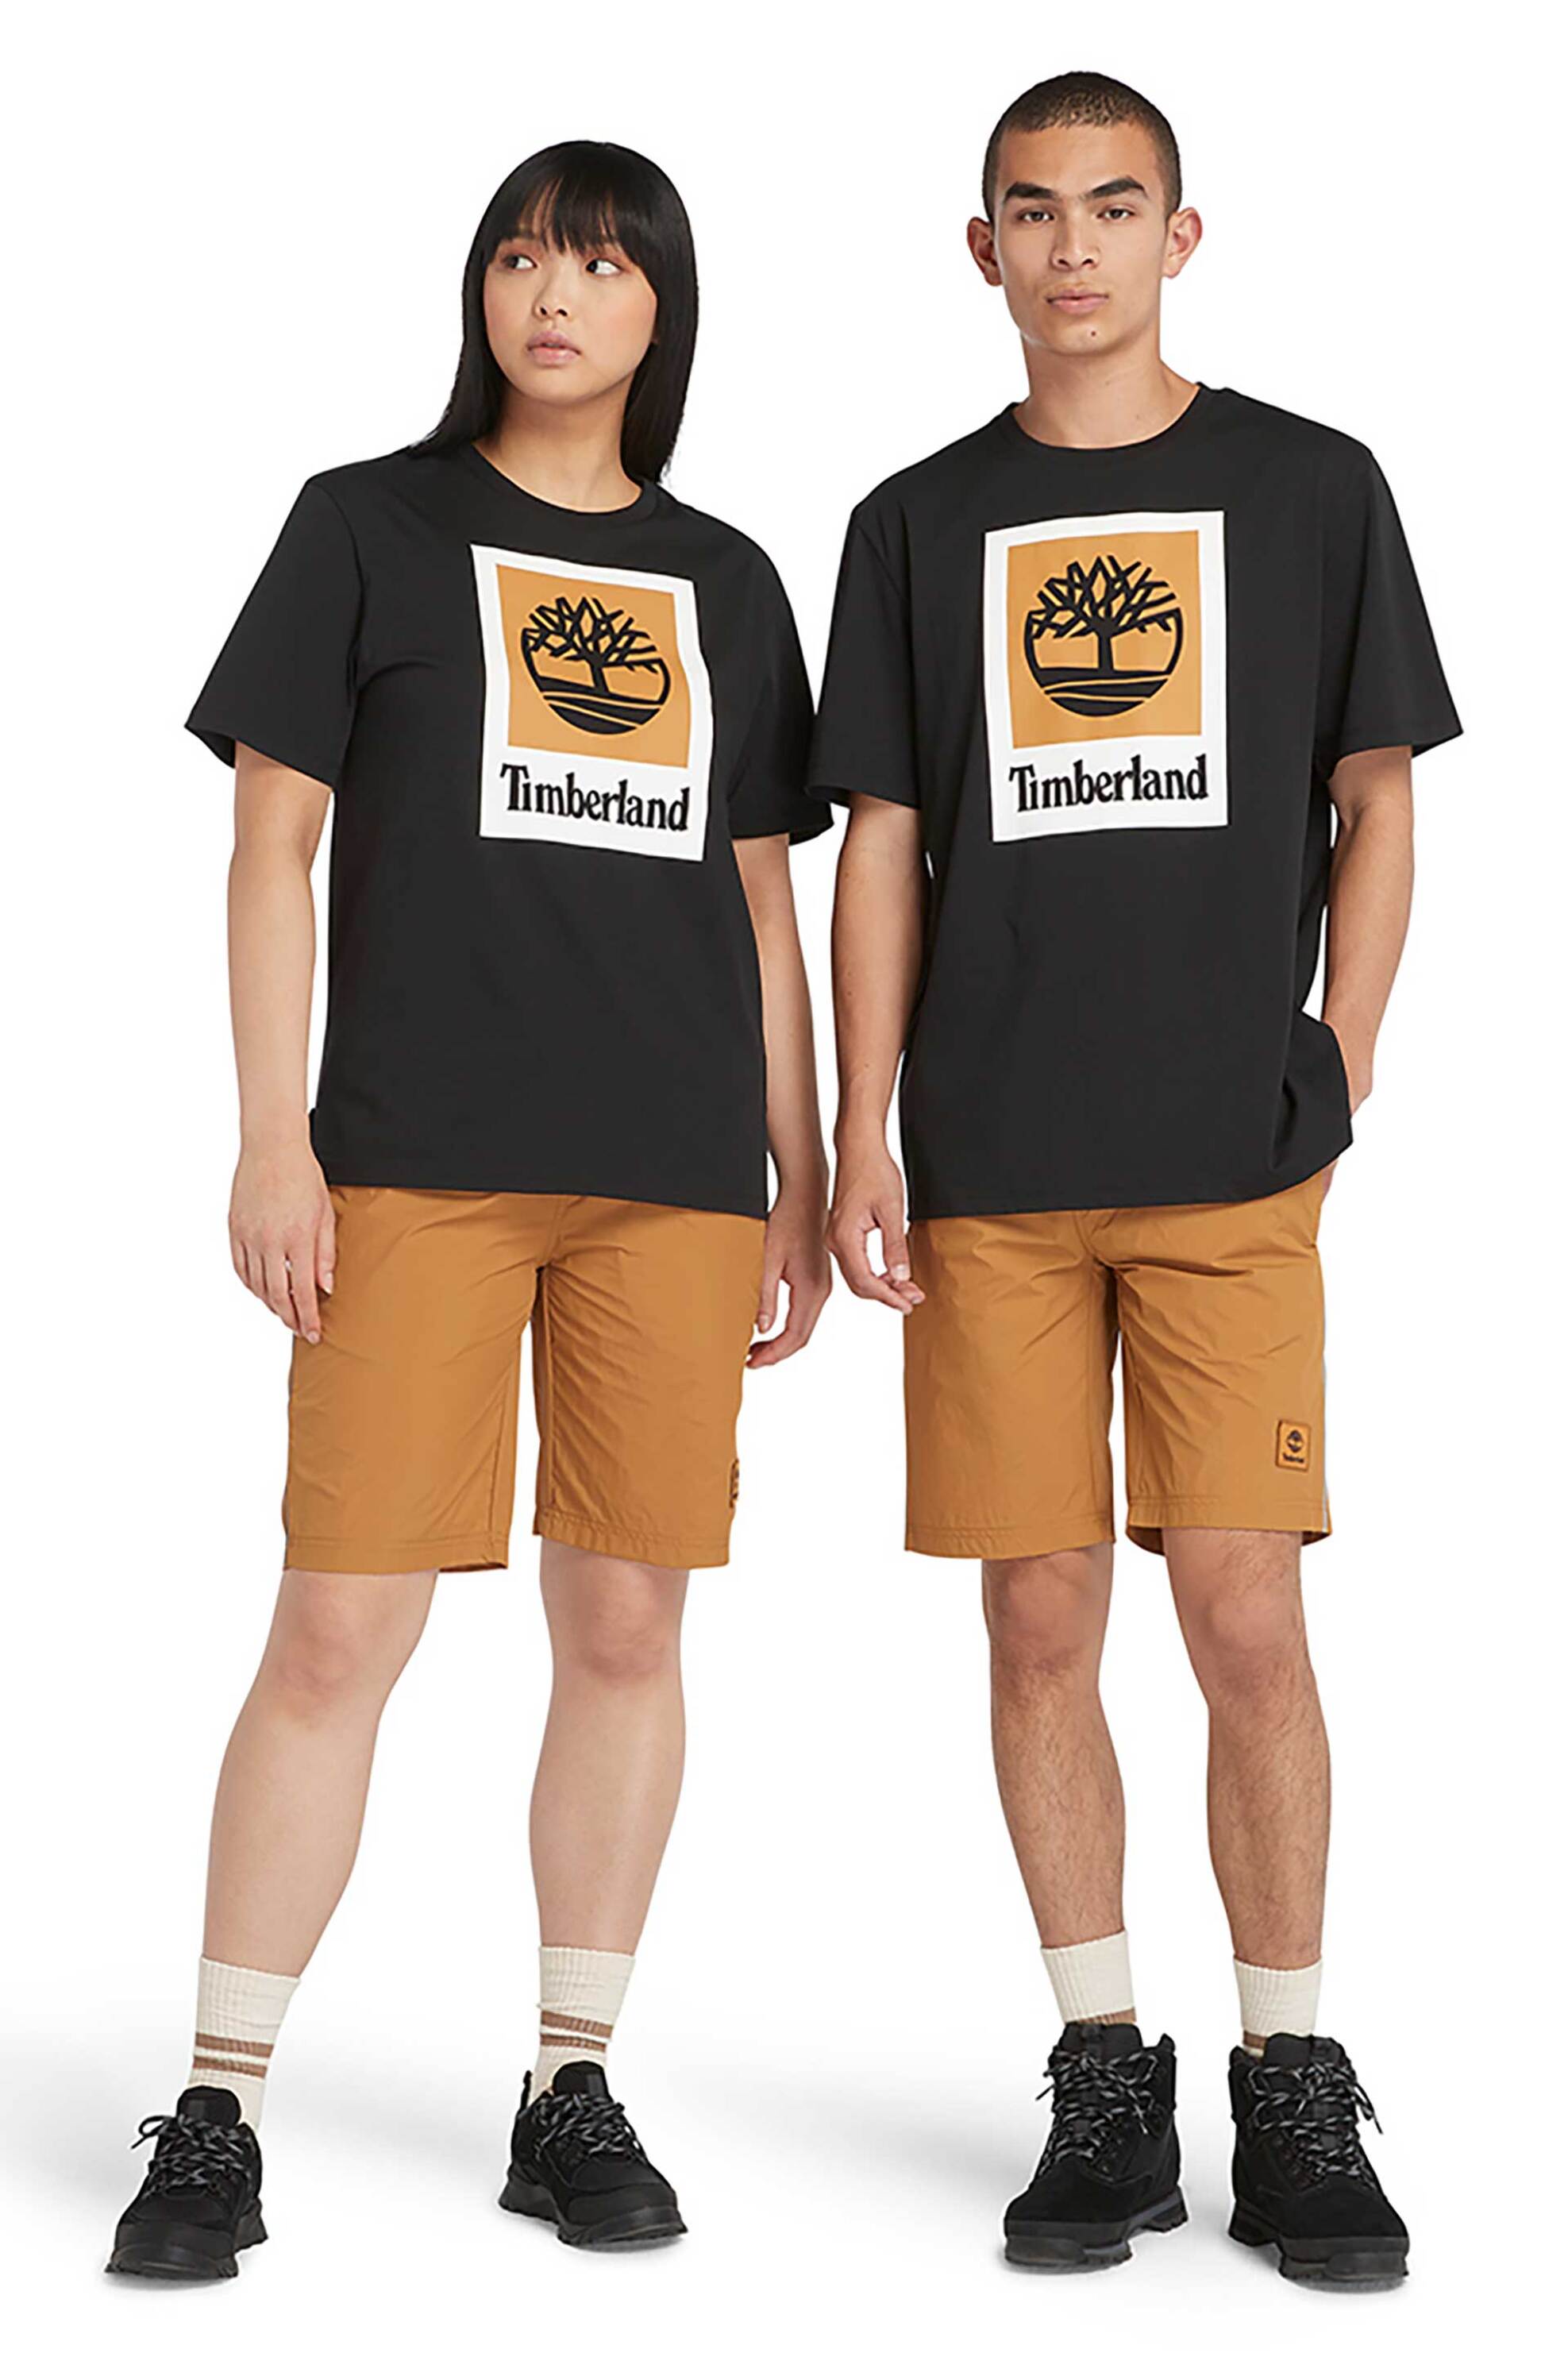 Ανδρική Μόδα > Ανδρικά Ρούχα > Ανδρικές Μπλούζες > Ανδρικά T-Shirts Timberland unisex T-shirt Authentic Fit "Stack Logo" - TB0A5QS20011 Μαύρο